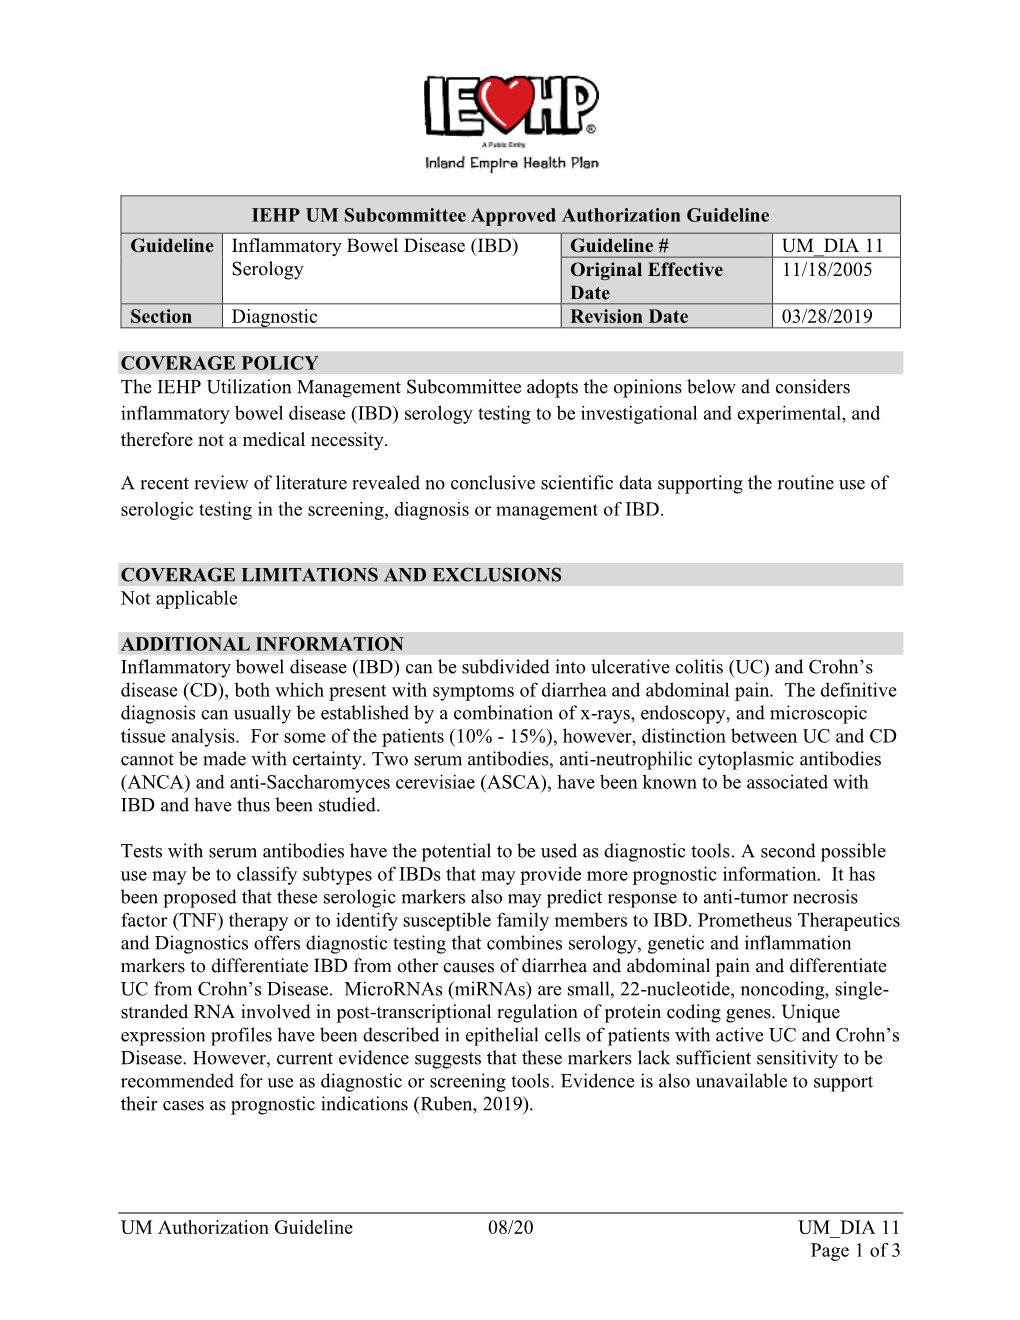 UM Authorization Guideline 08/20 UM DIA 11 Page 1 of 3